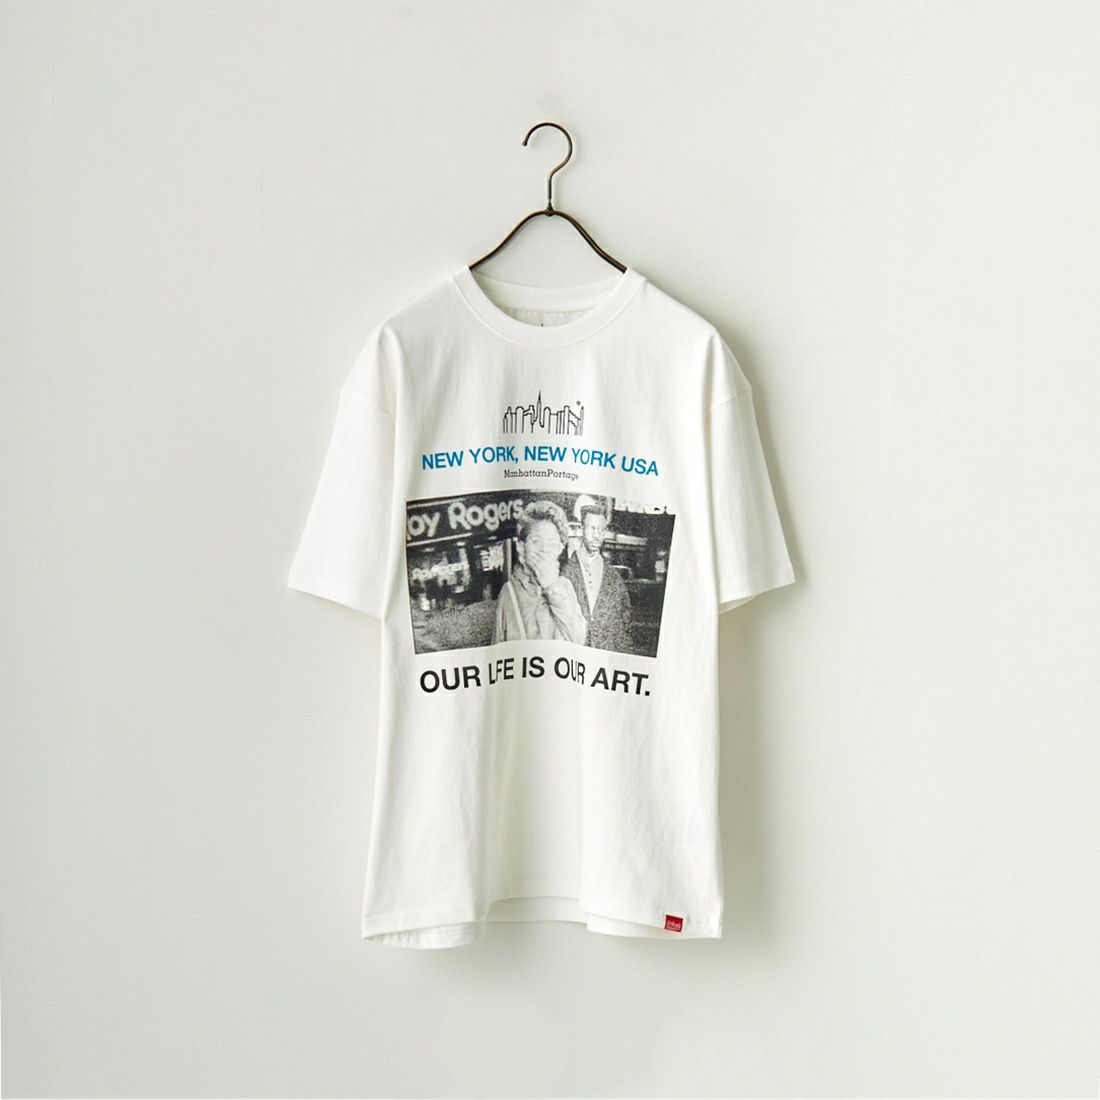 MANHATTAN PORTAGE [マンハッタンポーテージ] ショートスリーブプリントTシャツ [23FW-MP-M550] 01 WHITE